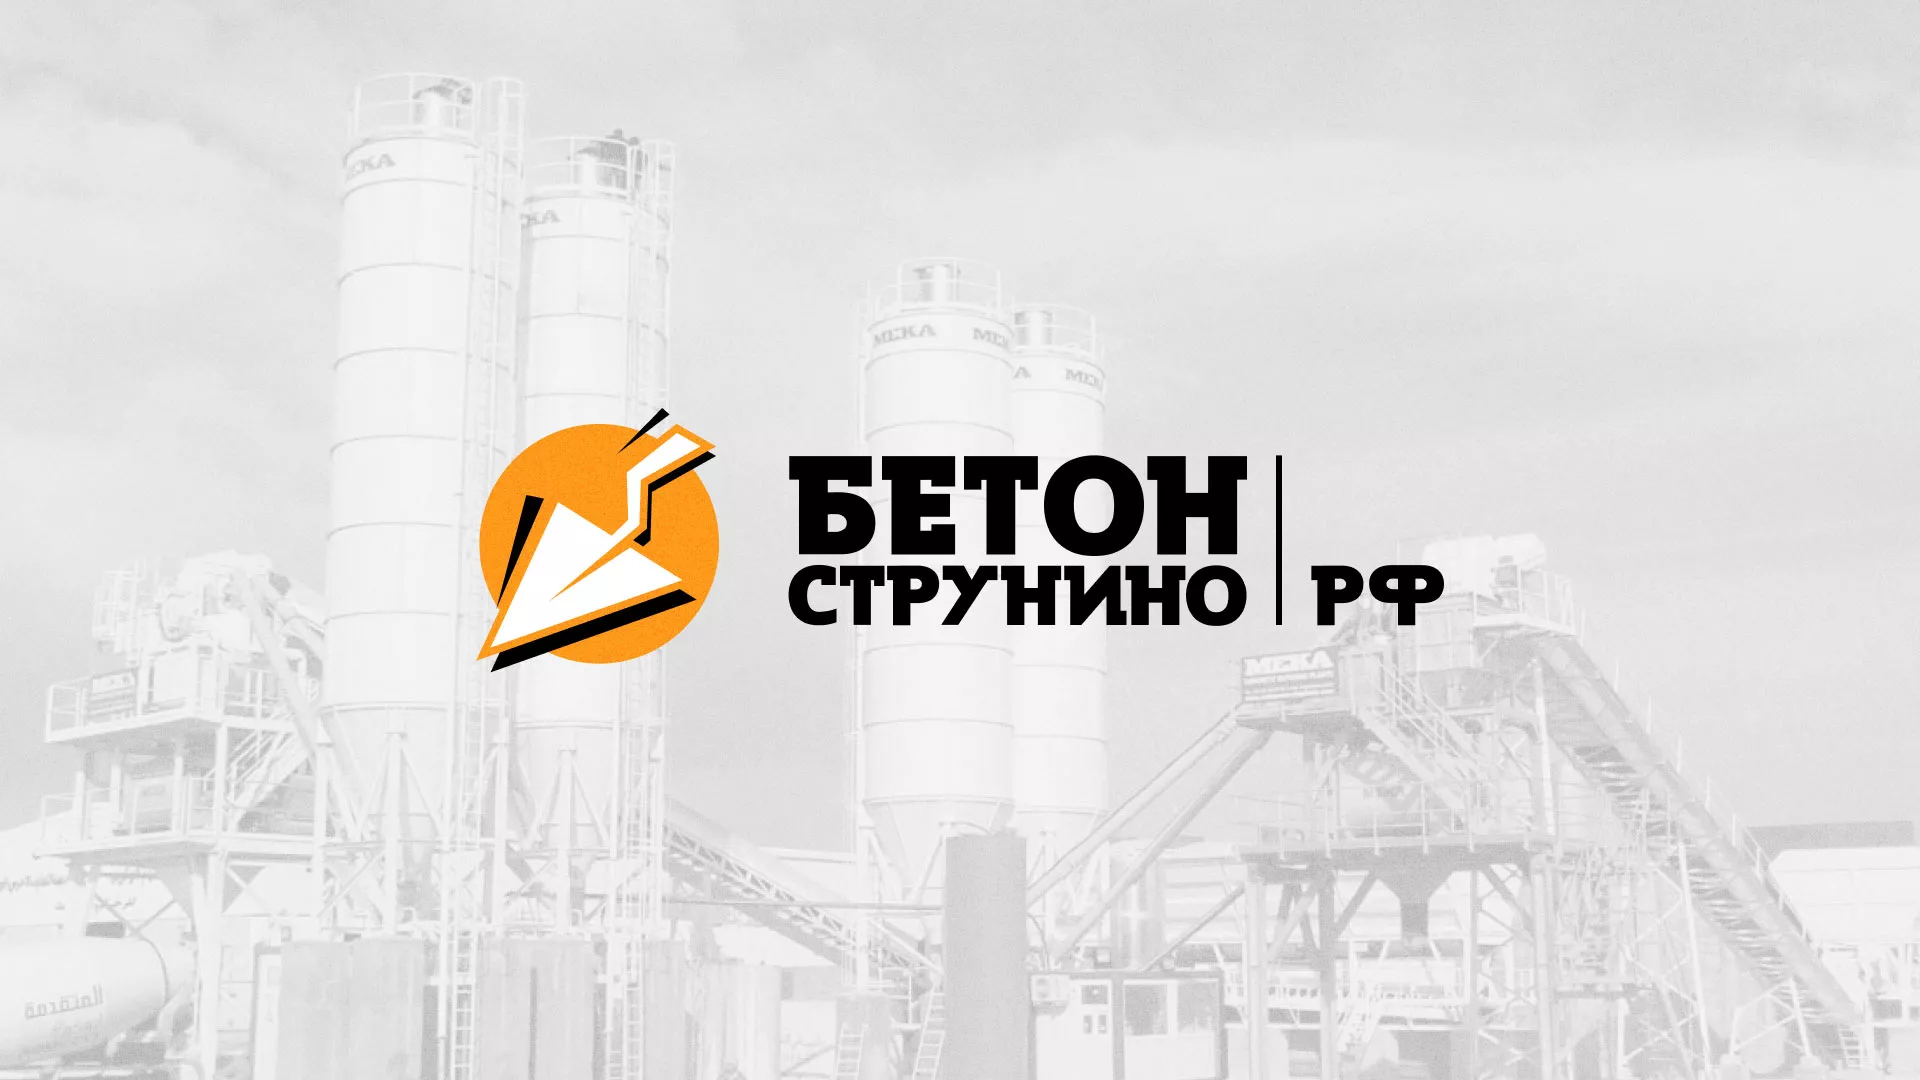 Разработка логотипа для бетонного завода в Асино